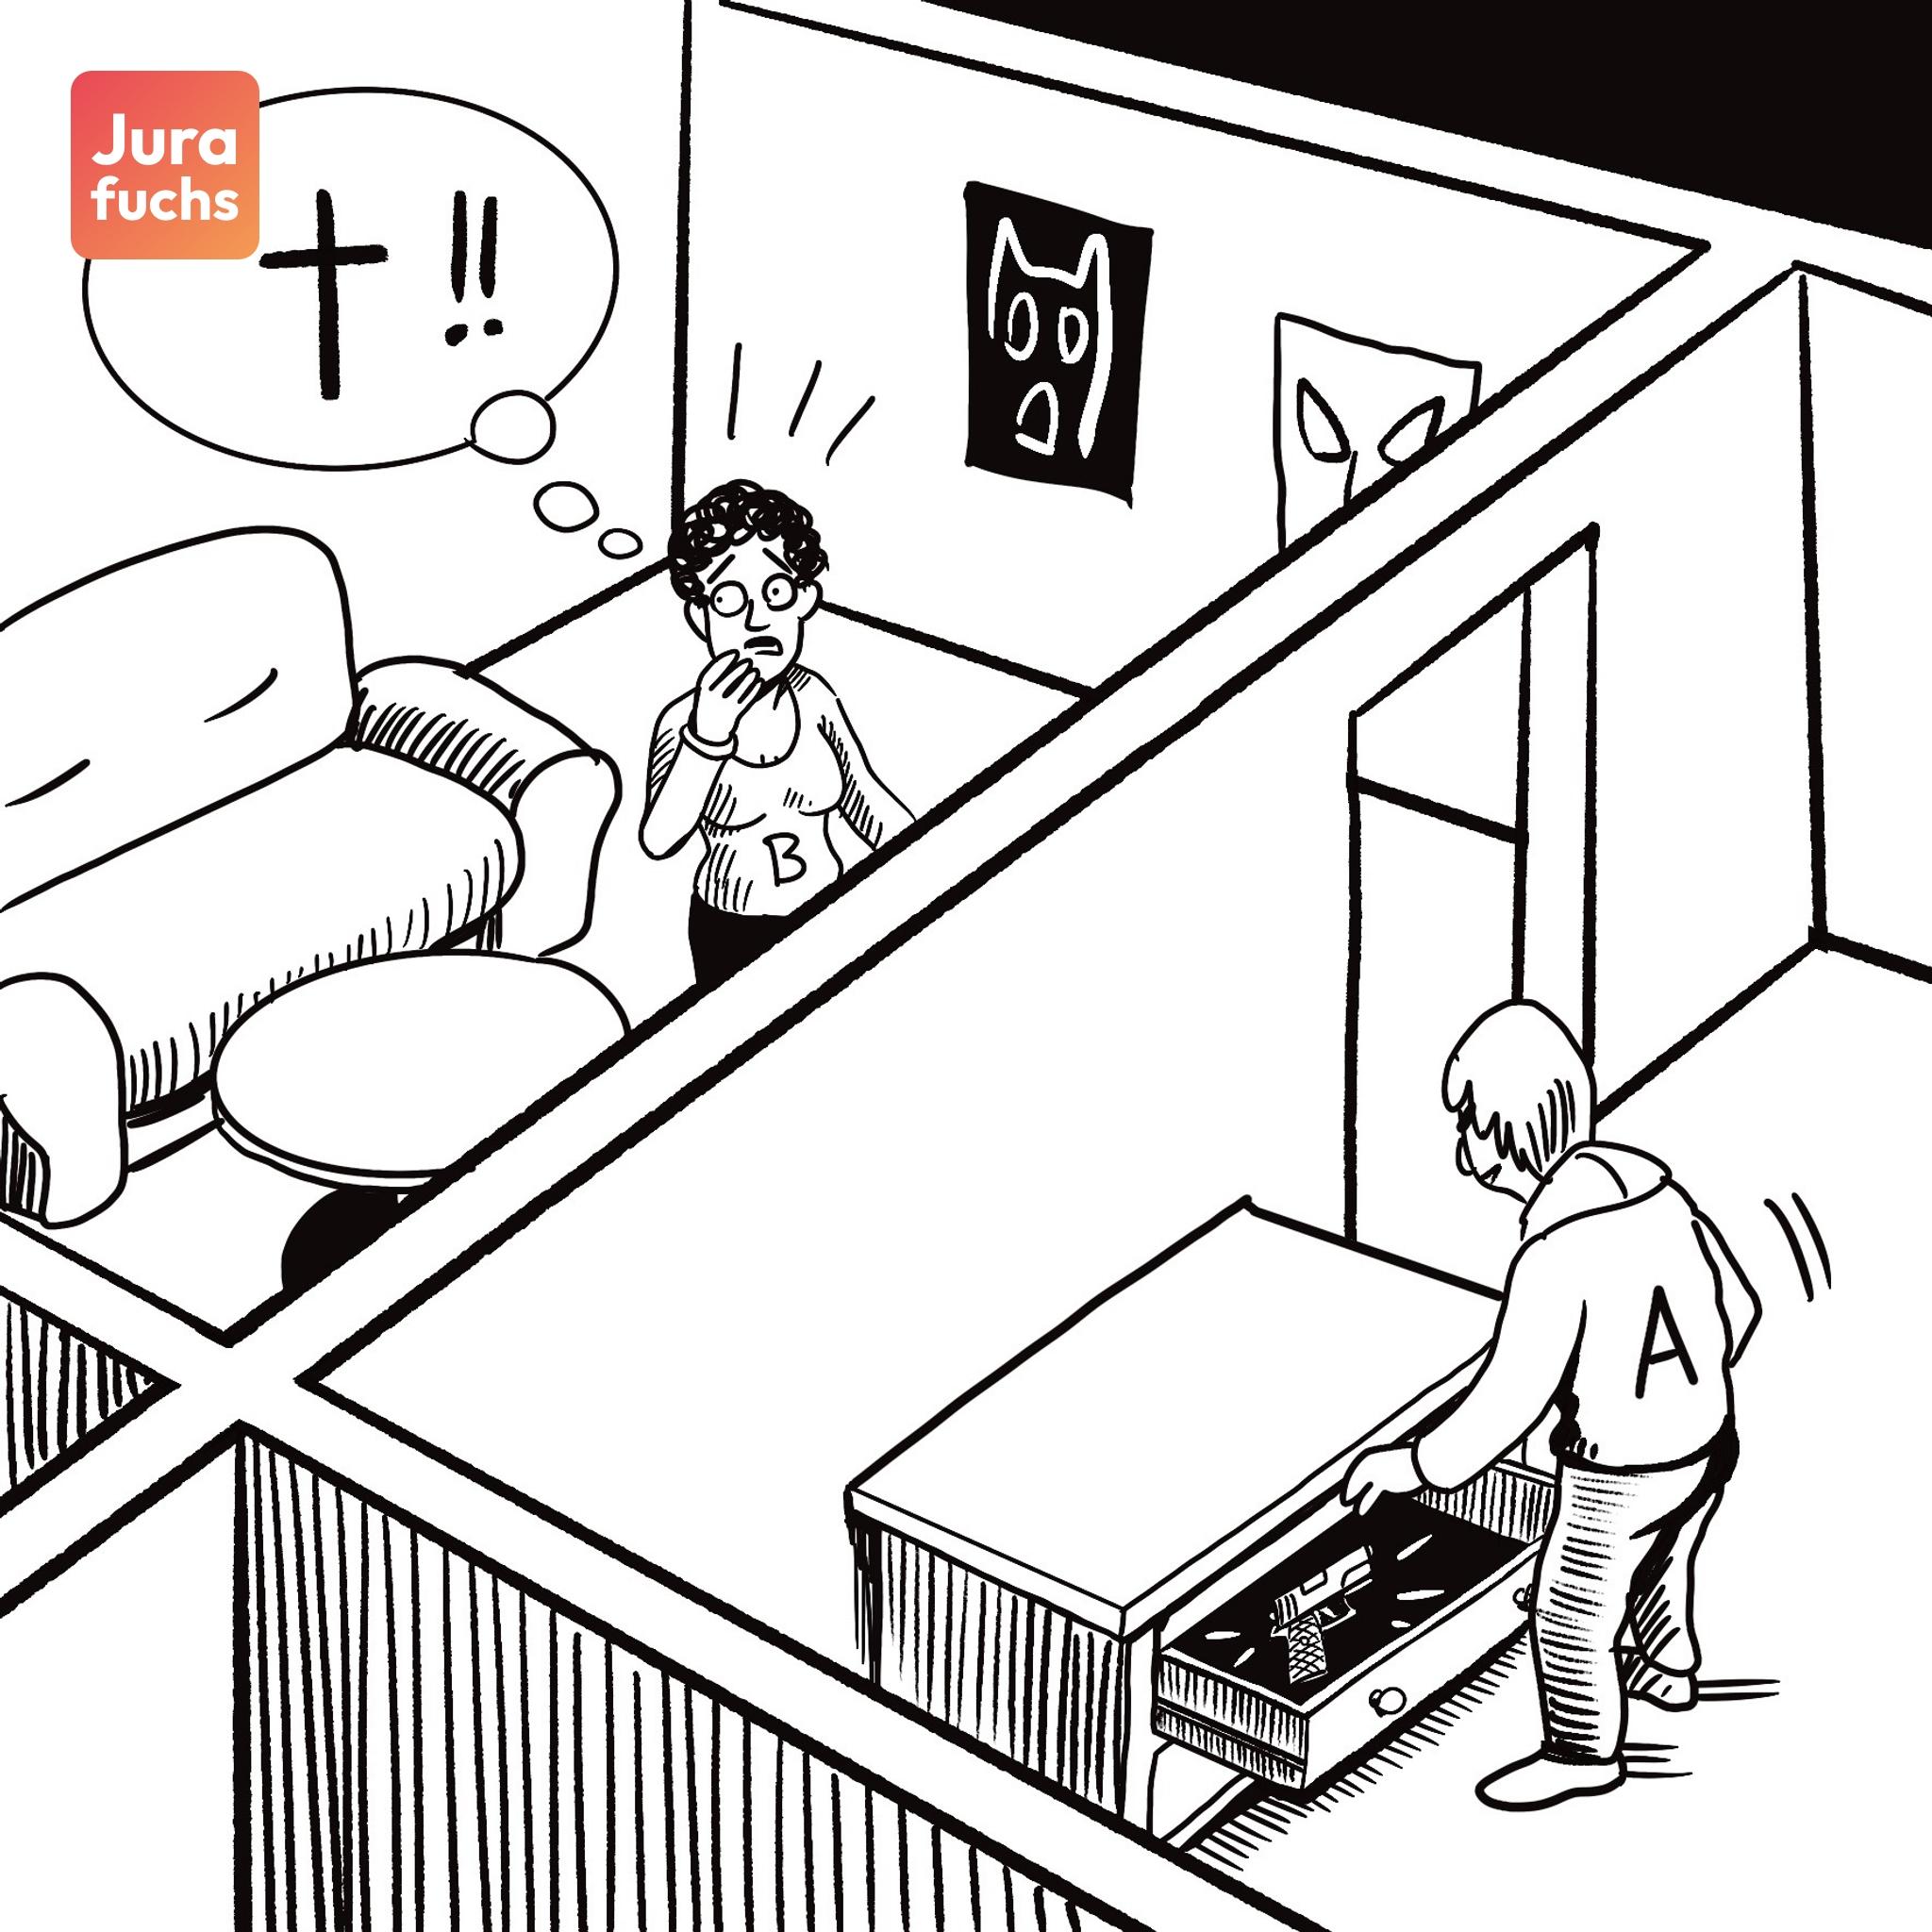 Jurafuchs Illustration: A bereitet sich im Nebenzimmer auf den geplanten Mord an B vor. B erwartet Böses. 